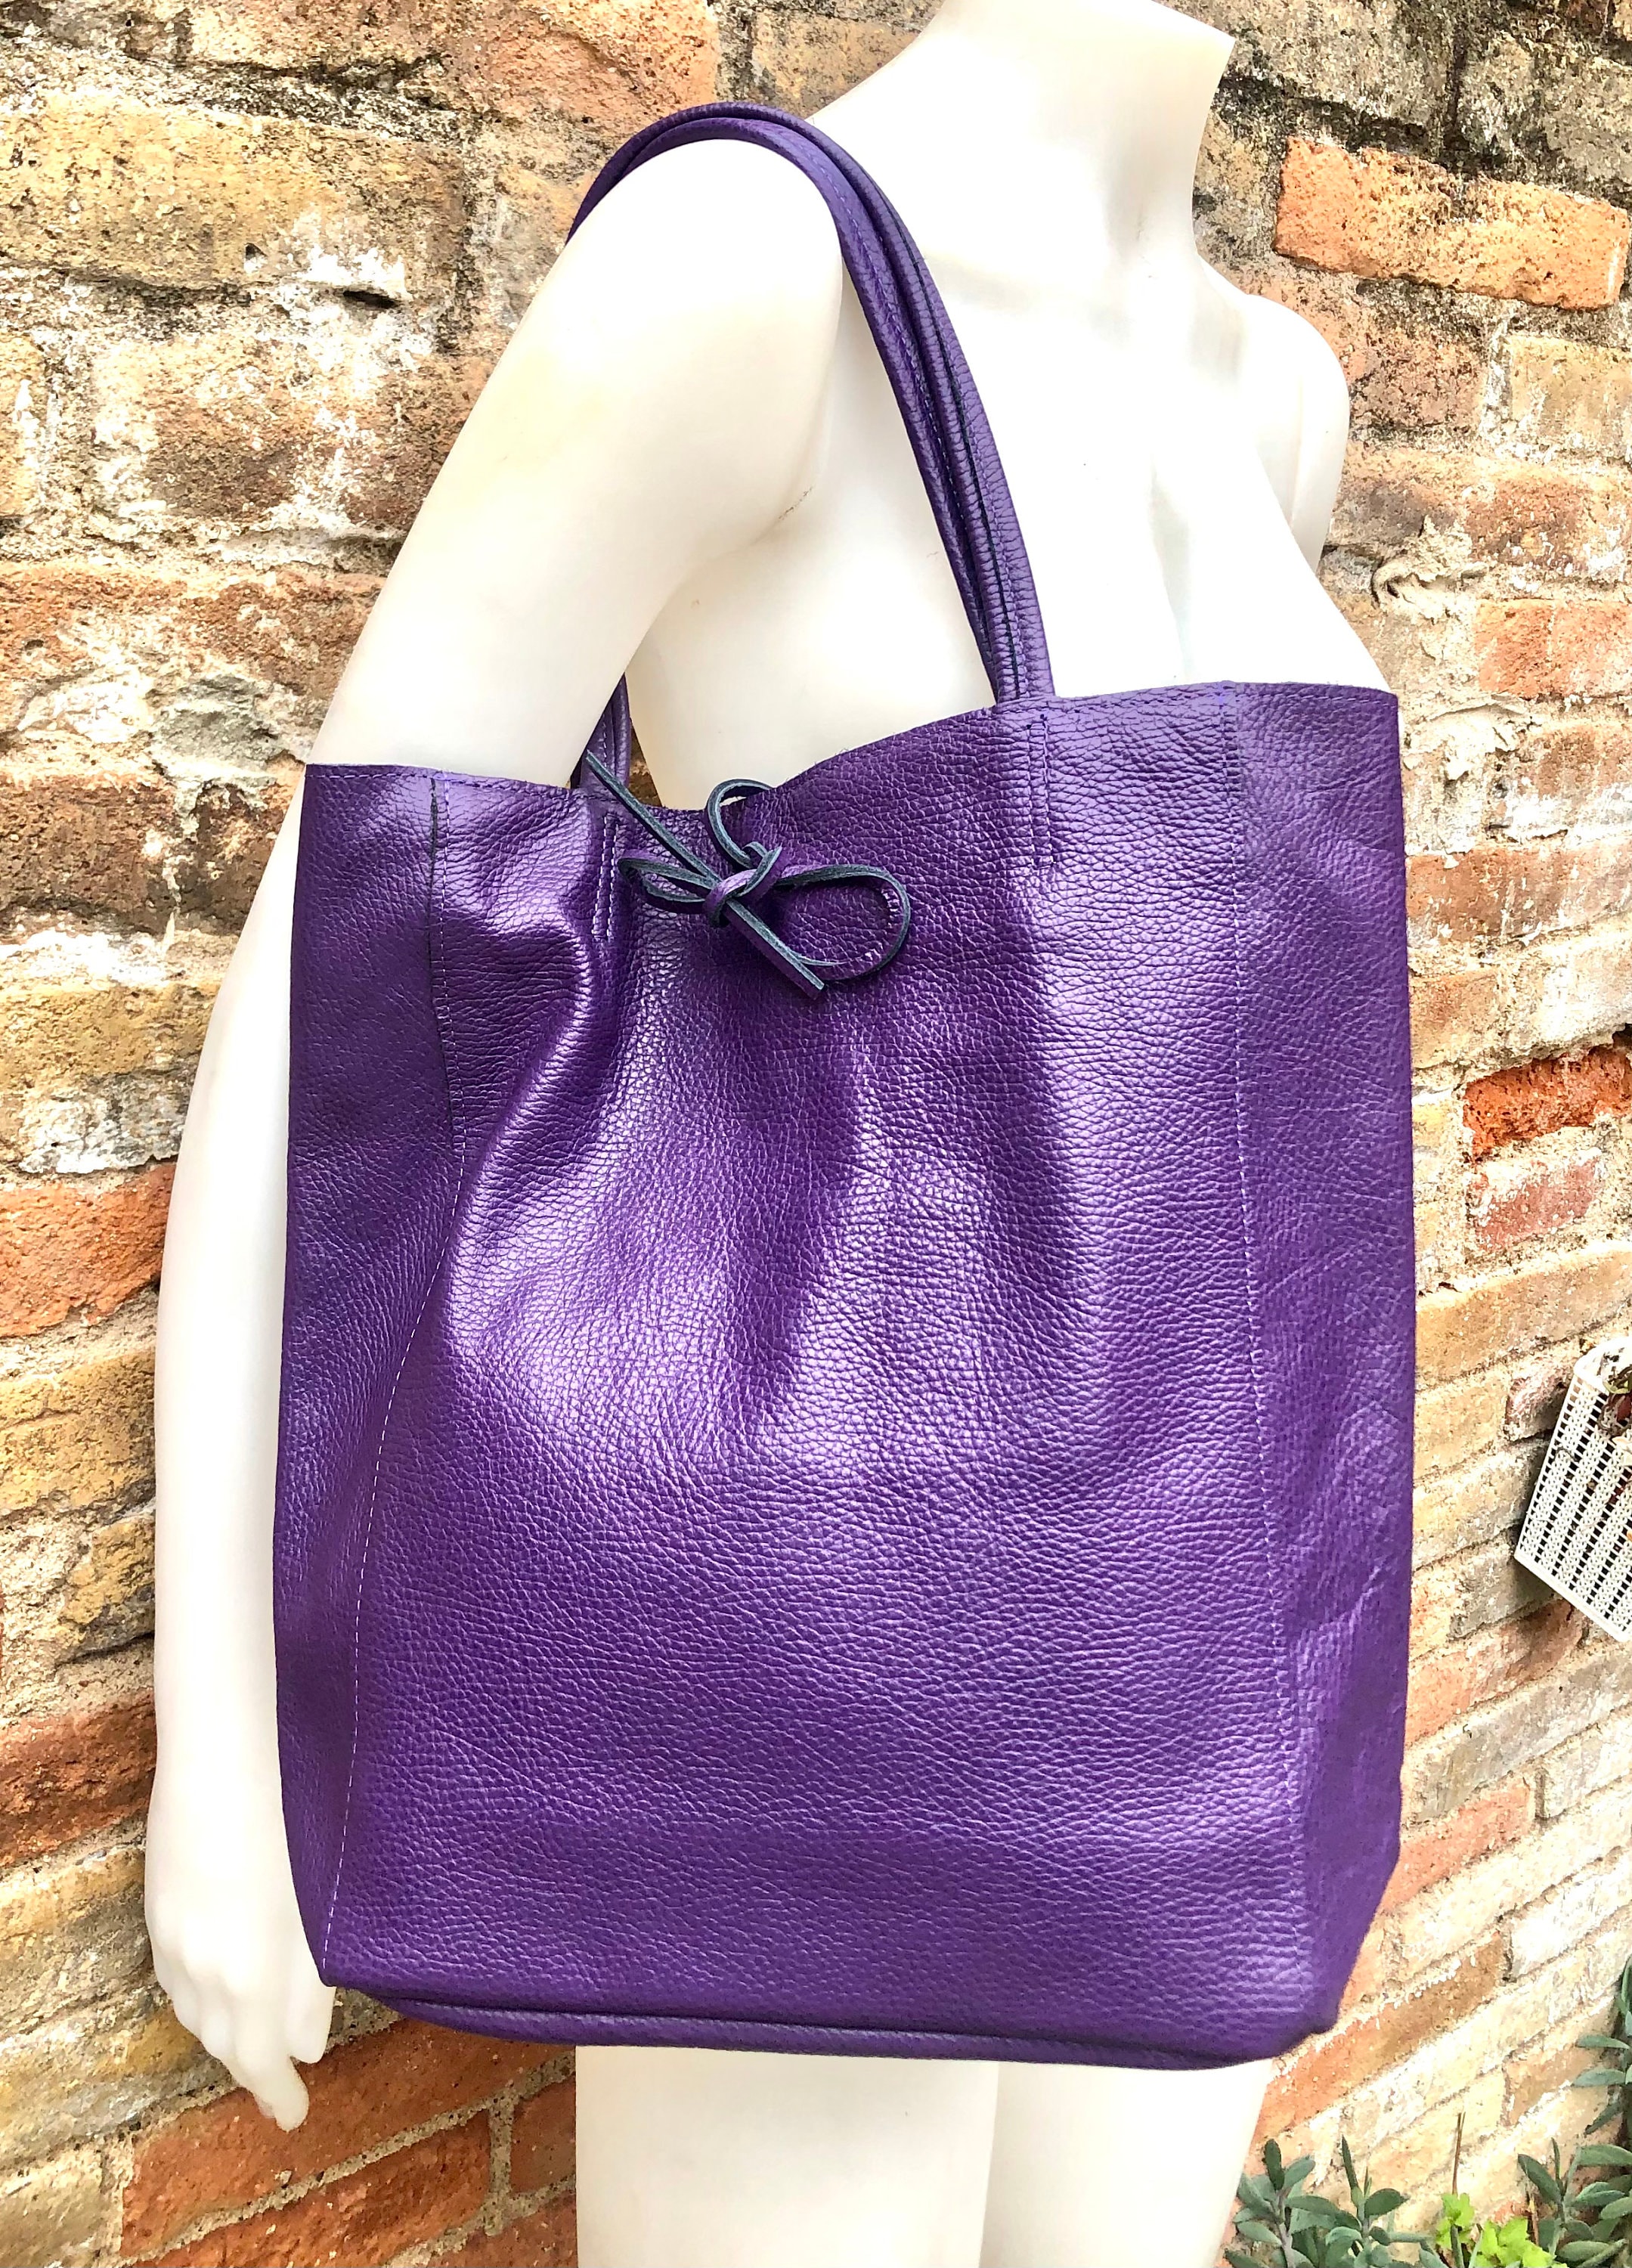 Light purple ladies leather tote bag in Kenya